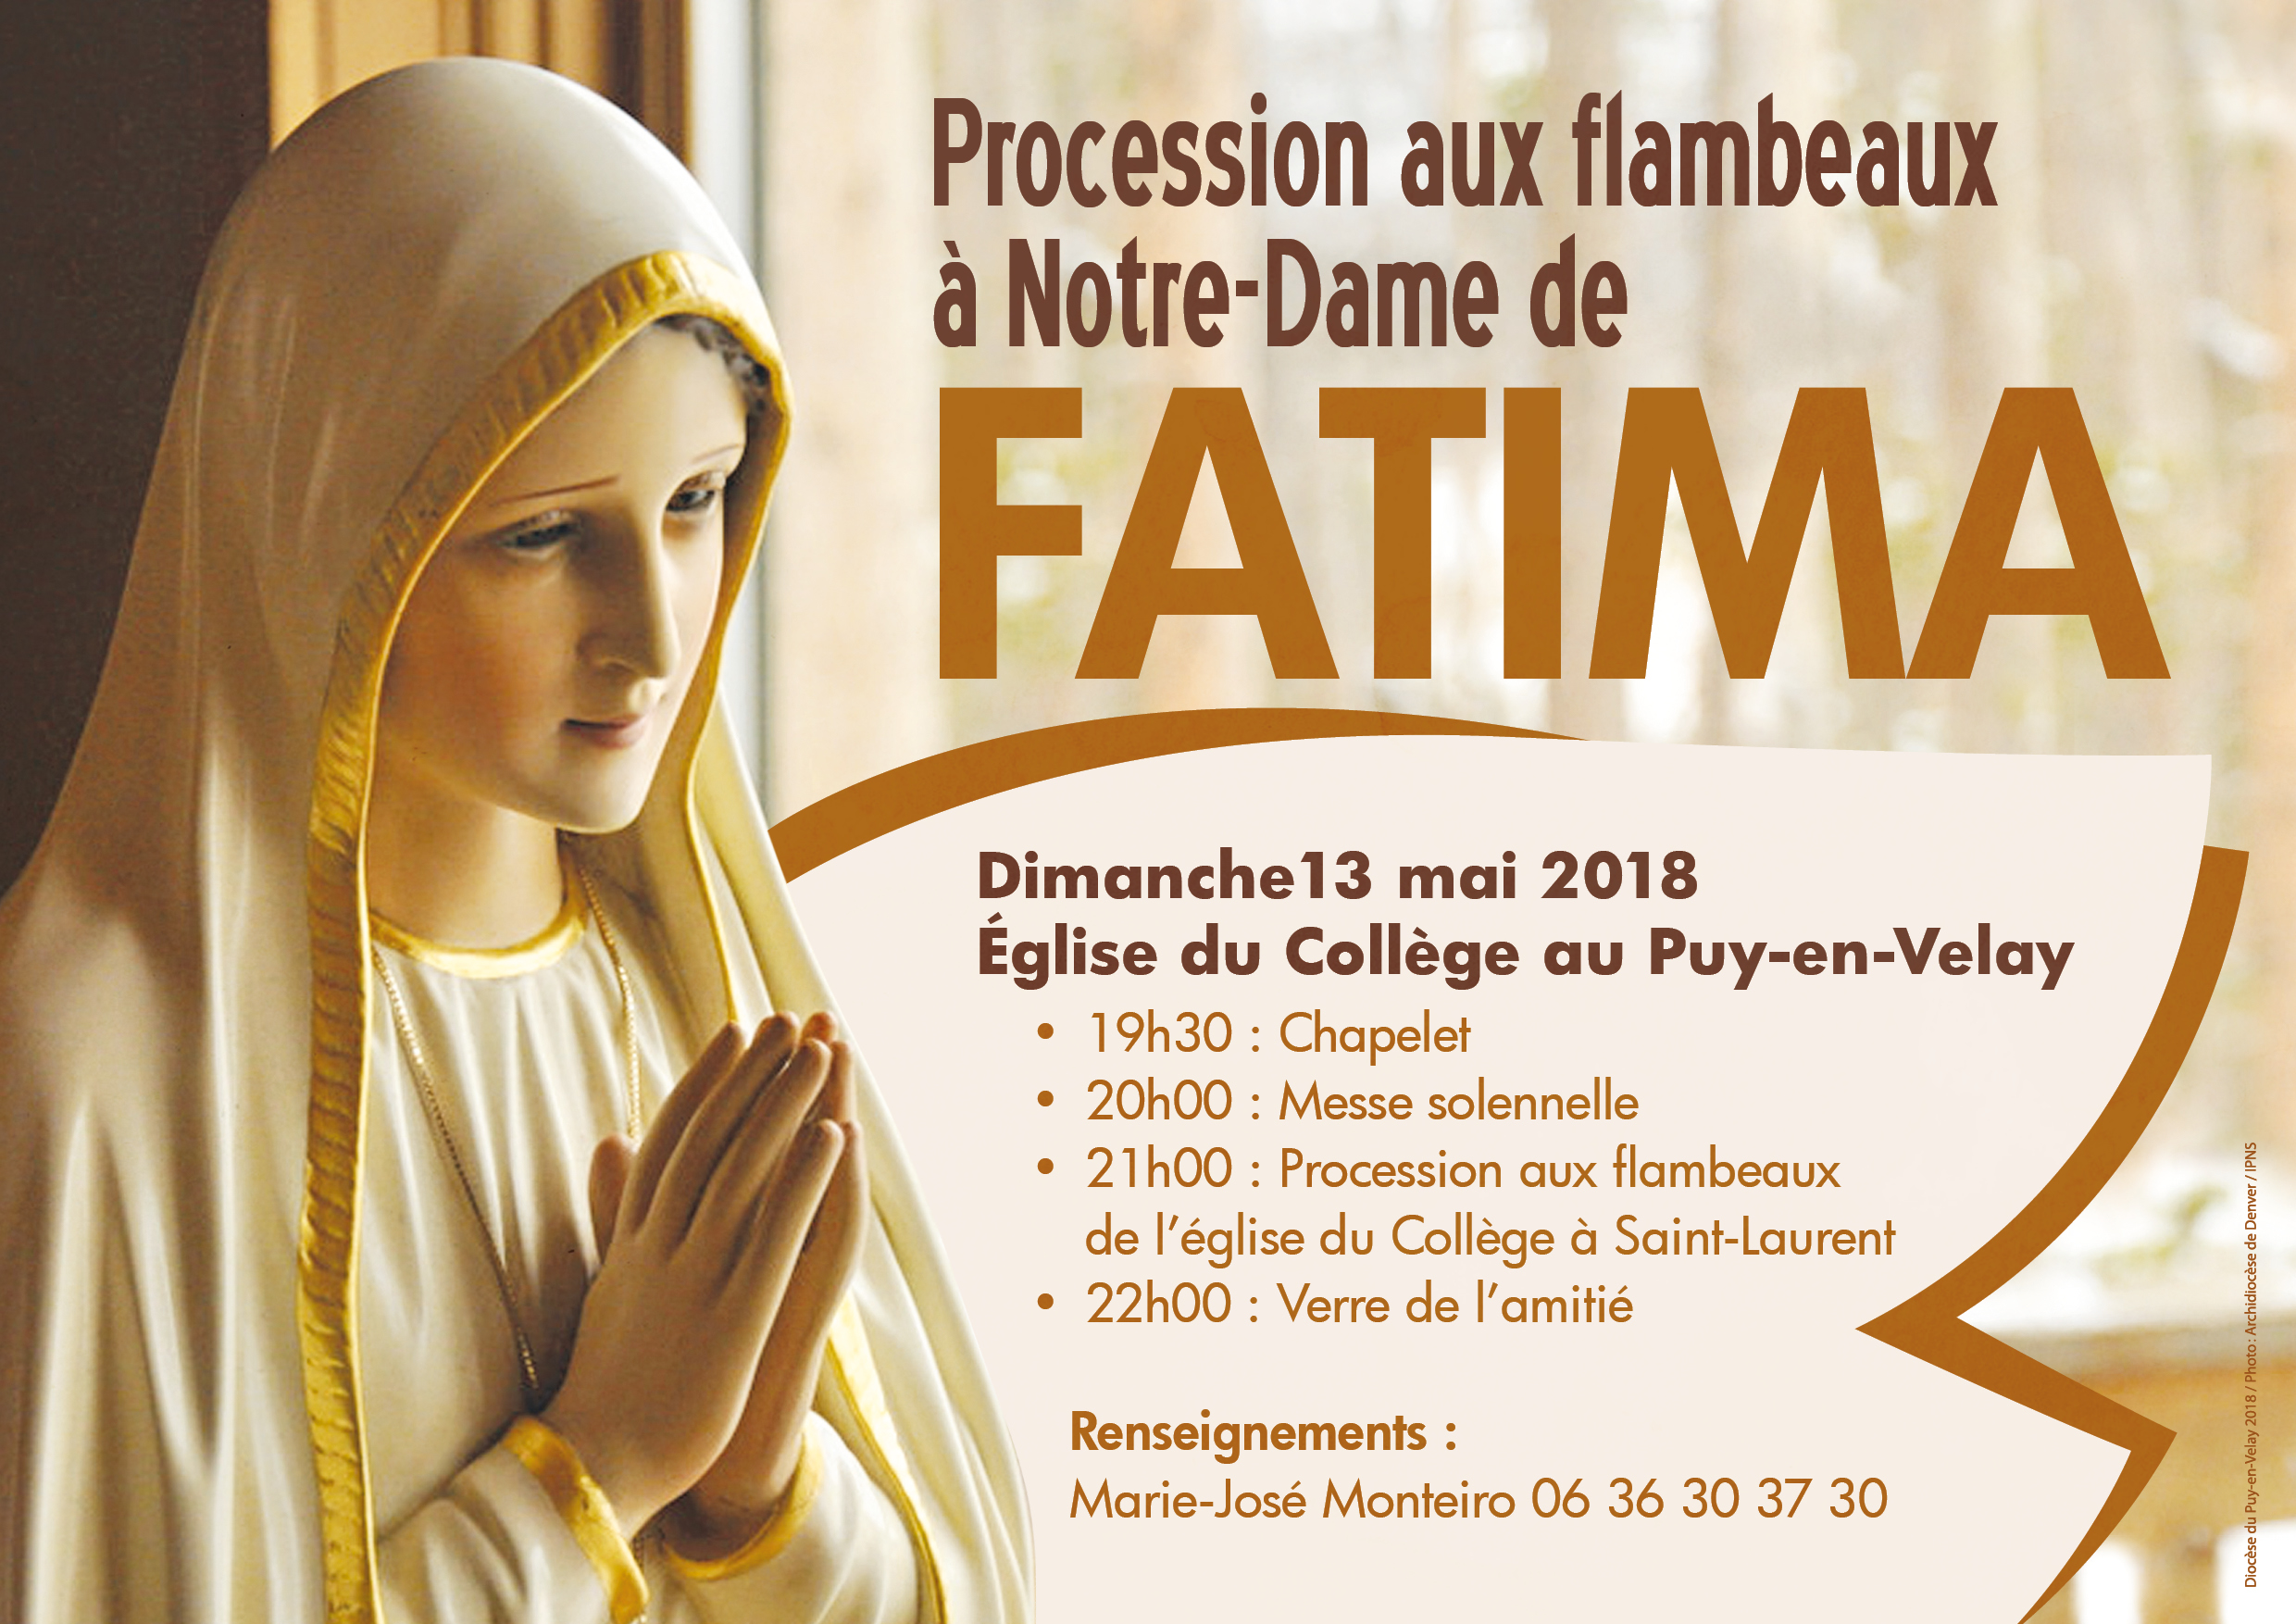 Procession à Notre-Dame de Fatima le 13 mai 2018 au Puy-en-Velay (43)